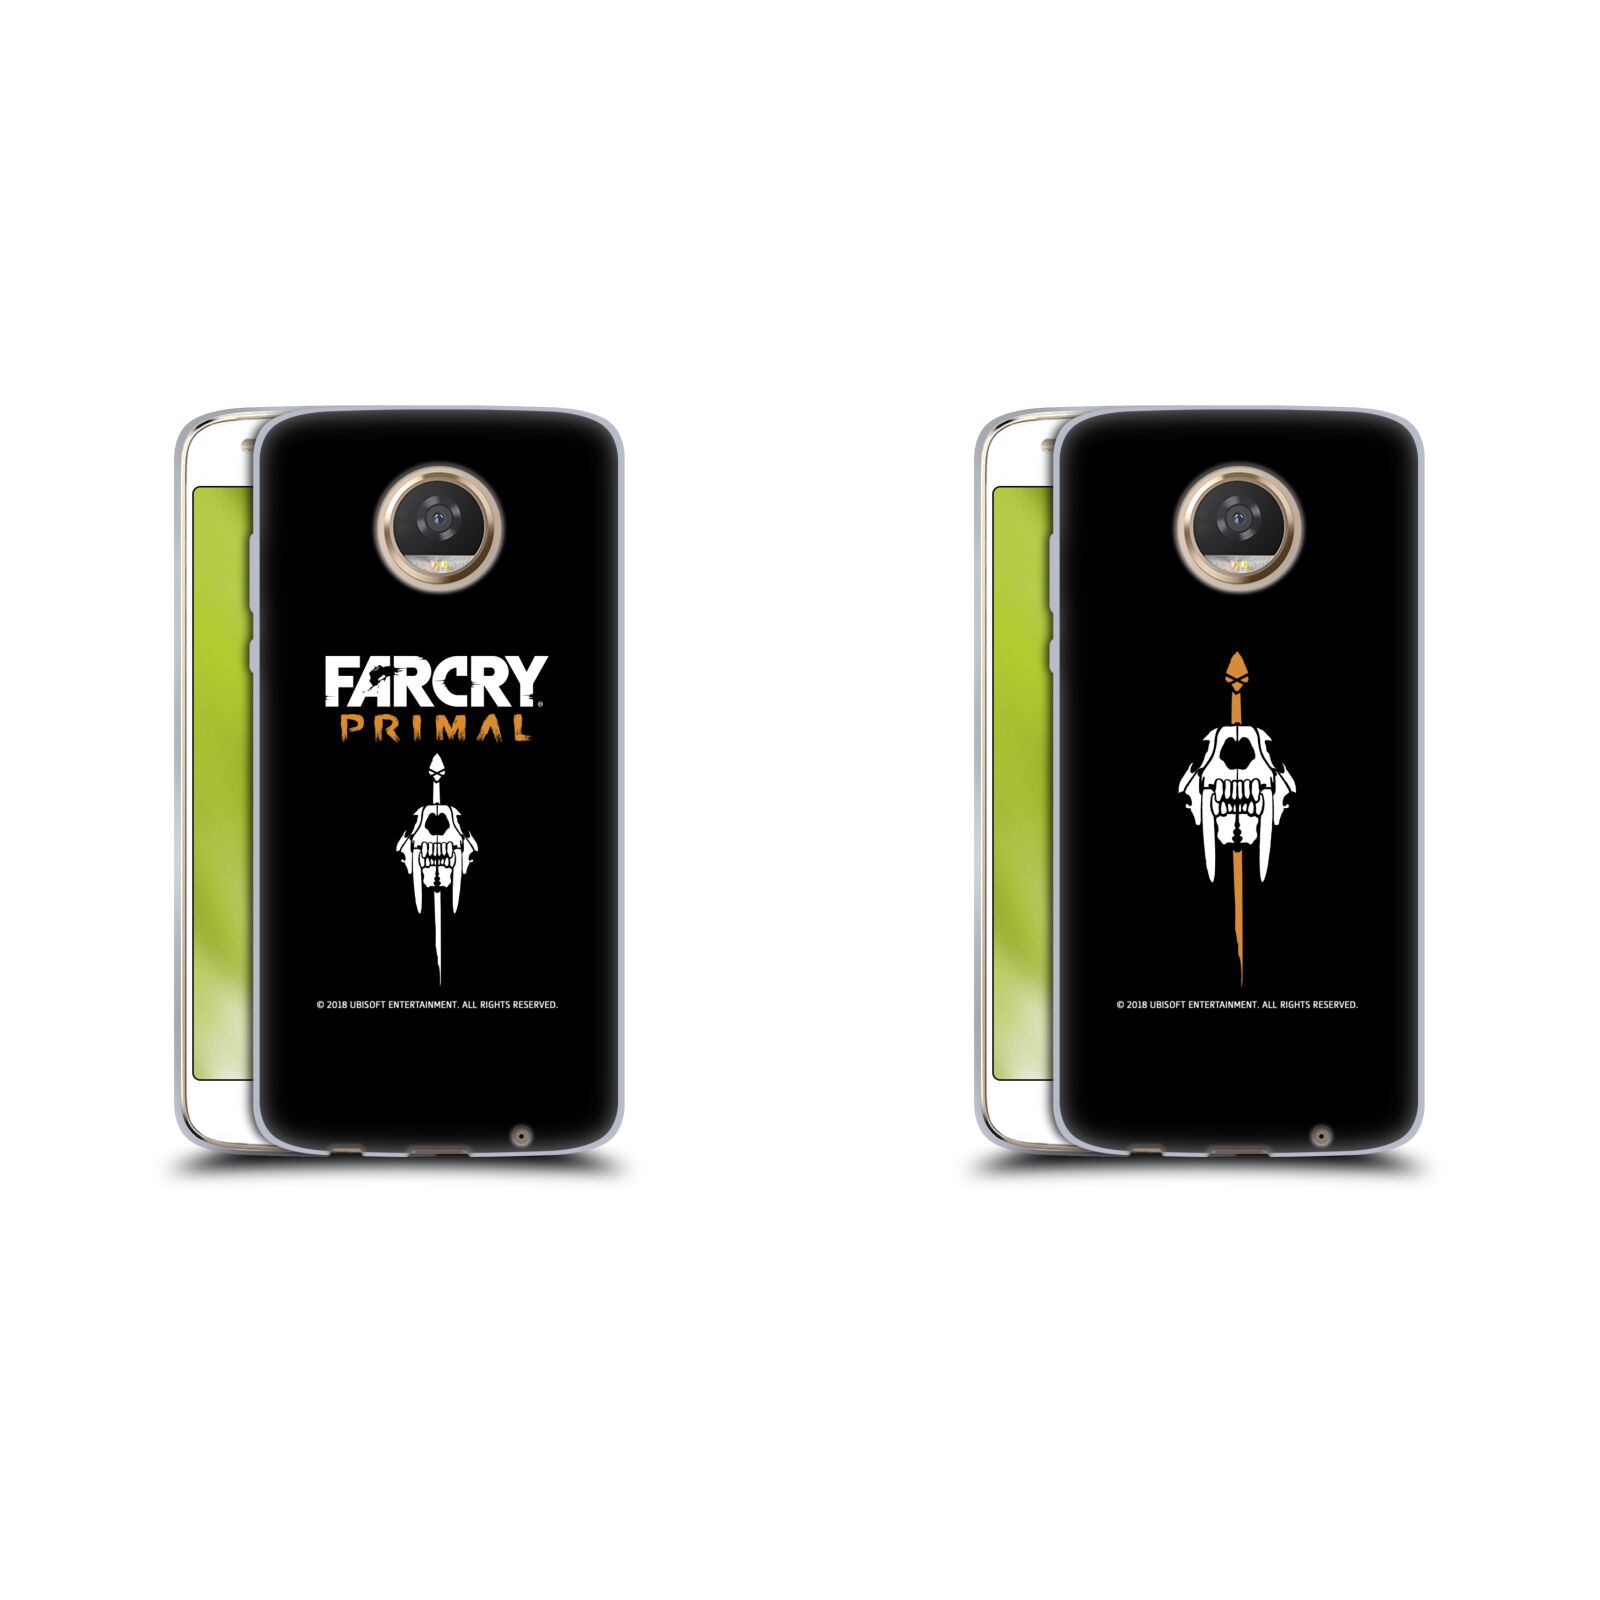 公式ライセンス Far Cry プライマル ロゴアート ソフトジェルケース Motorola 電話 スマホケース 全機種対応 グッズ ワイヤレス充電 対応 Qiワイヤレス充電 Qi充電